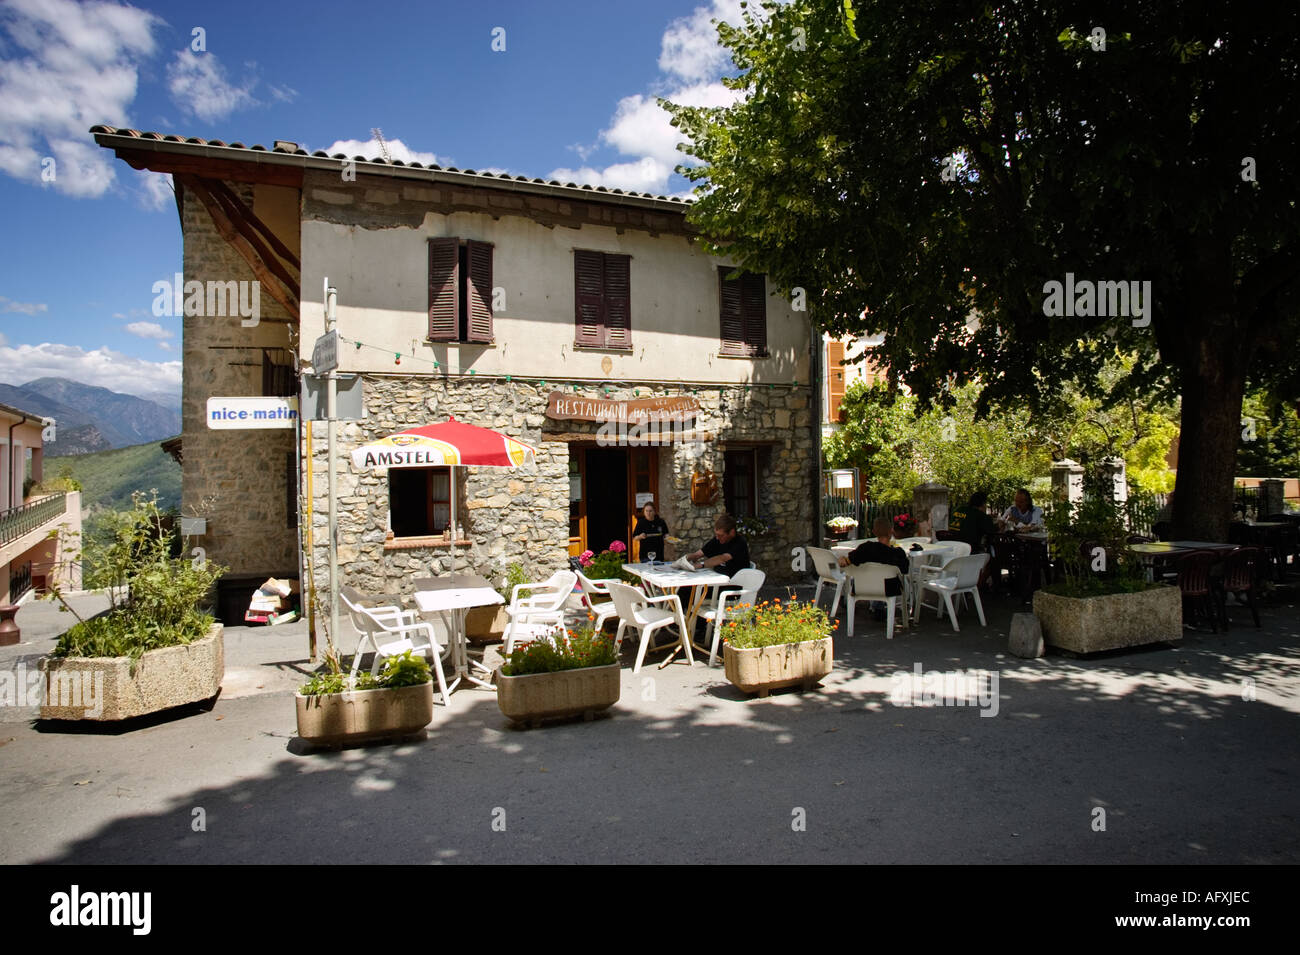 Ristorante caffetteria bar nella piazza del villaggio al clan nelle Alpes Maritimes, Provenza, Francia Foto Stock